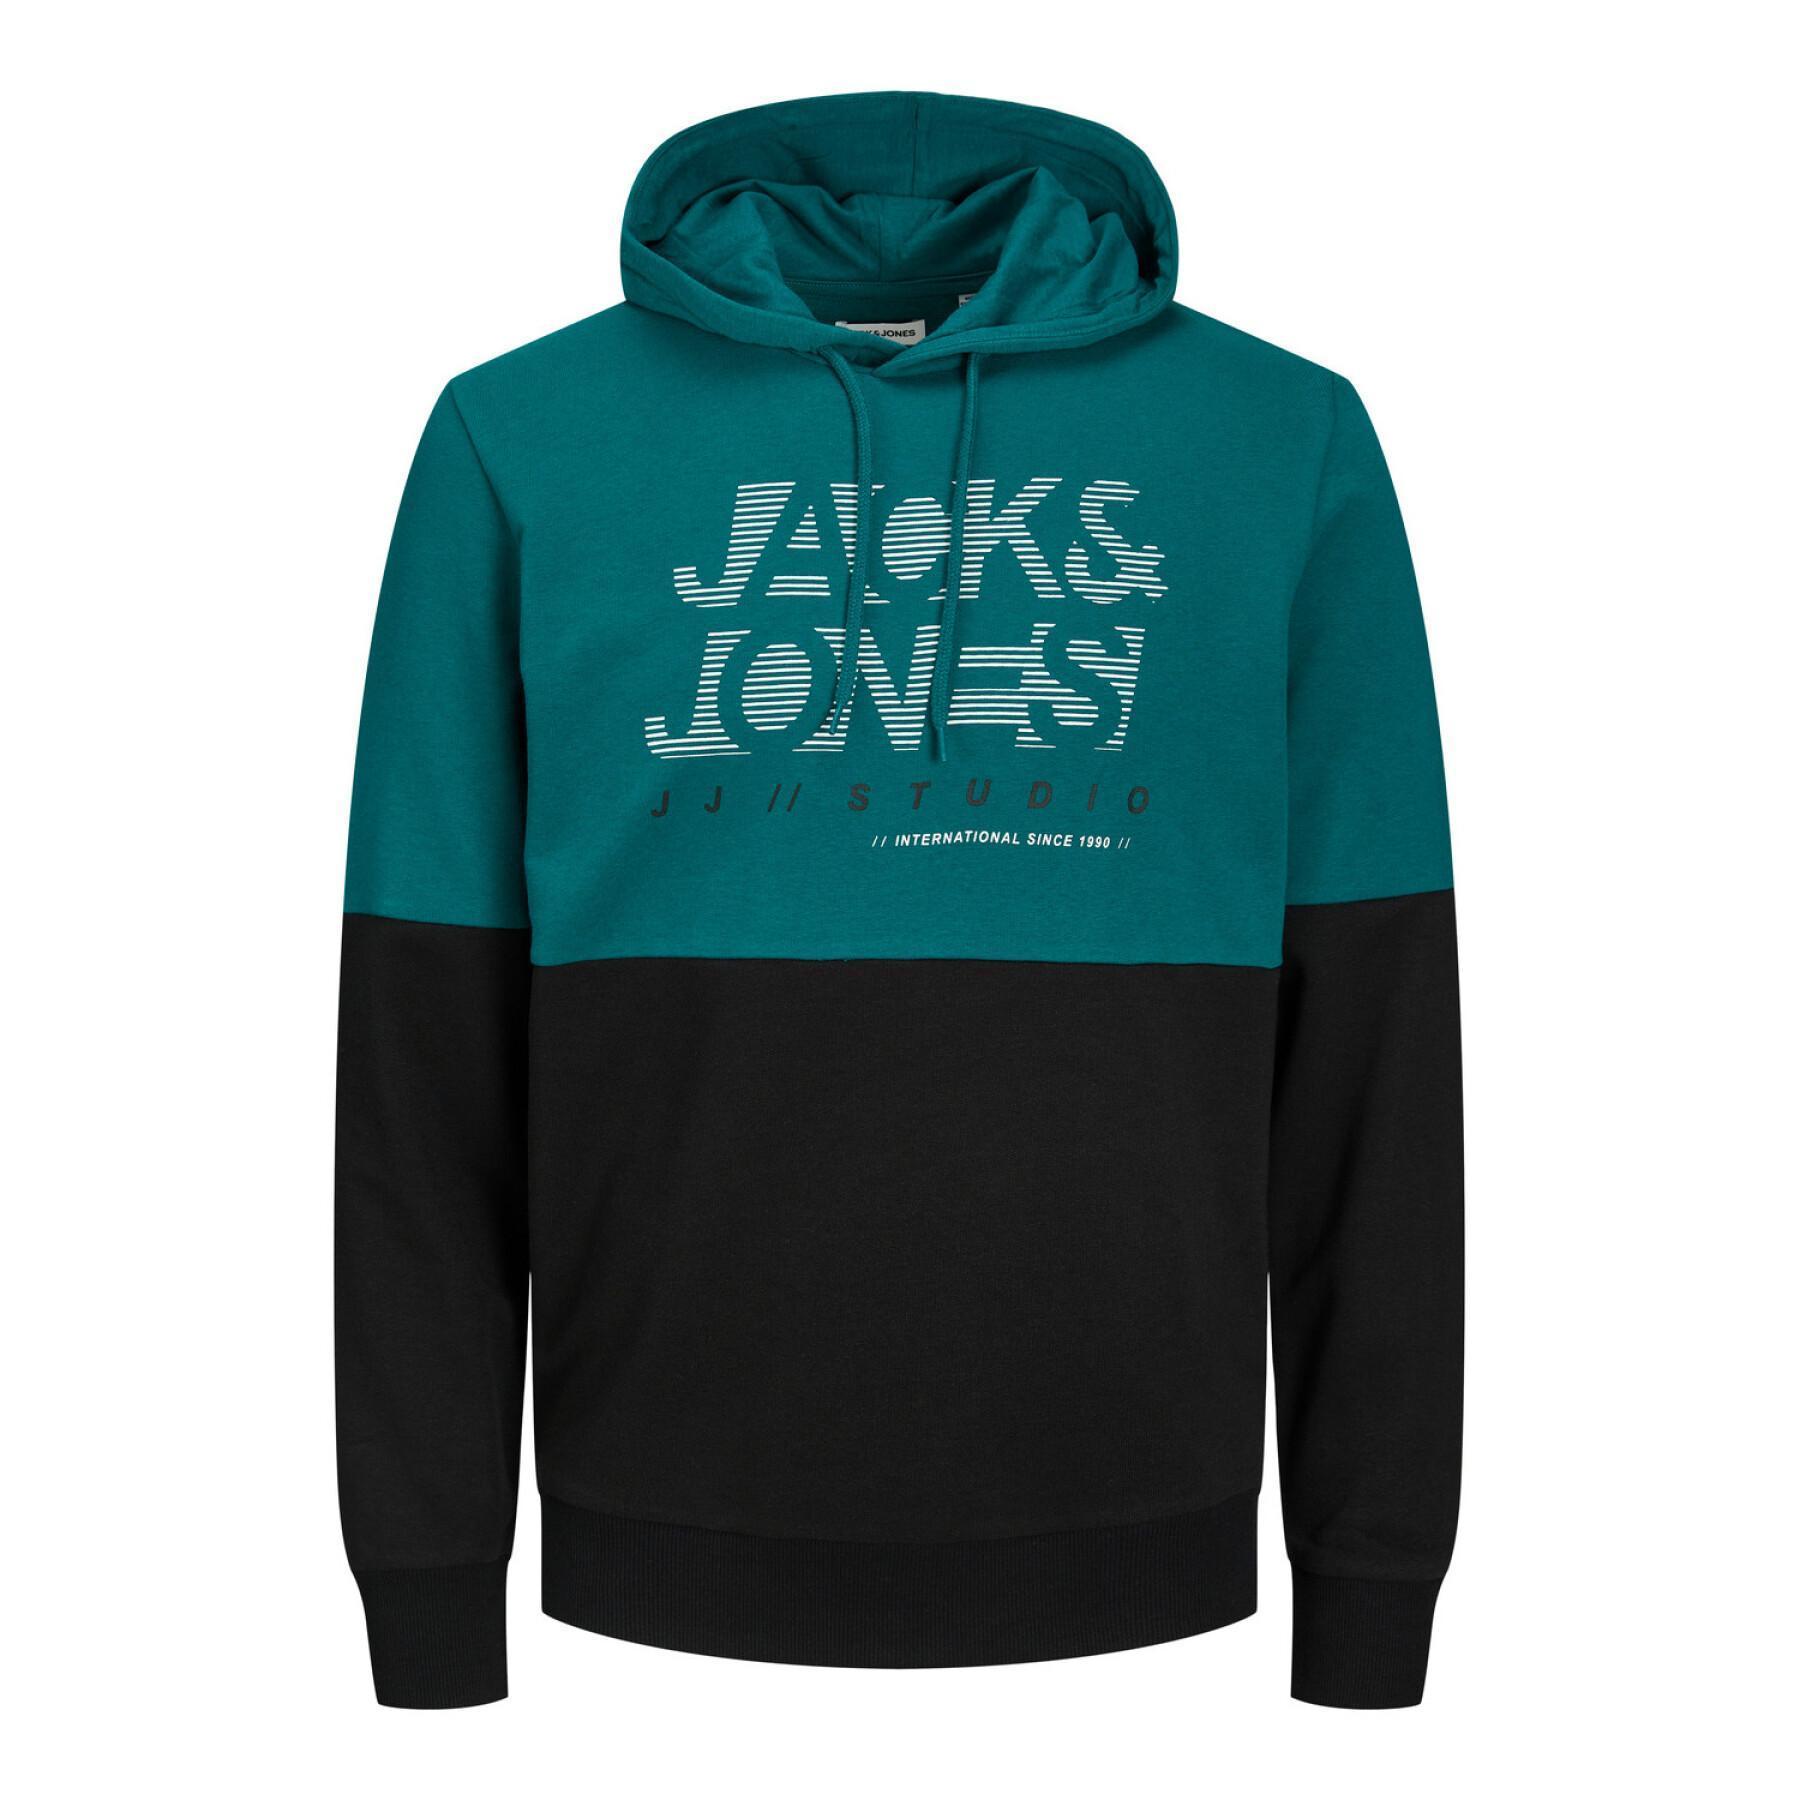 Hooded sweatshirt Jack & Jones Marco